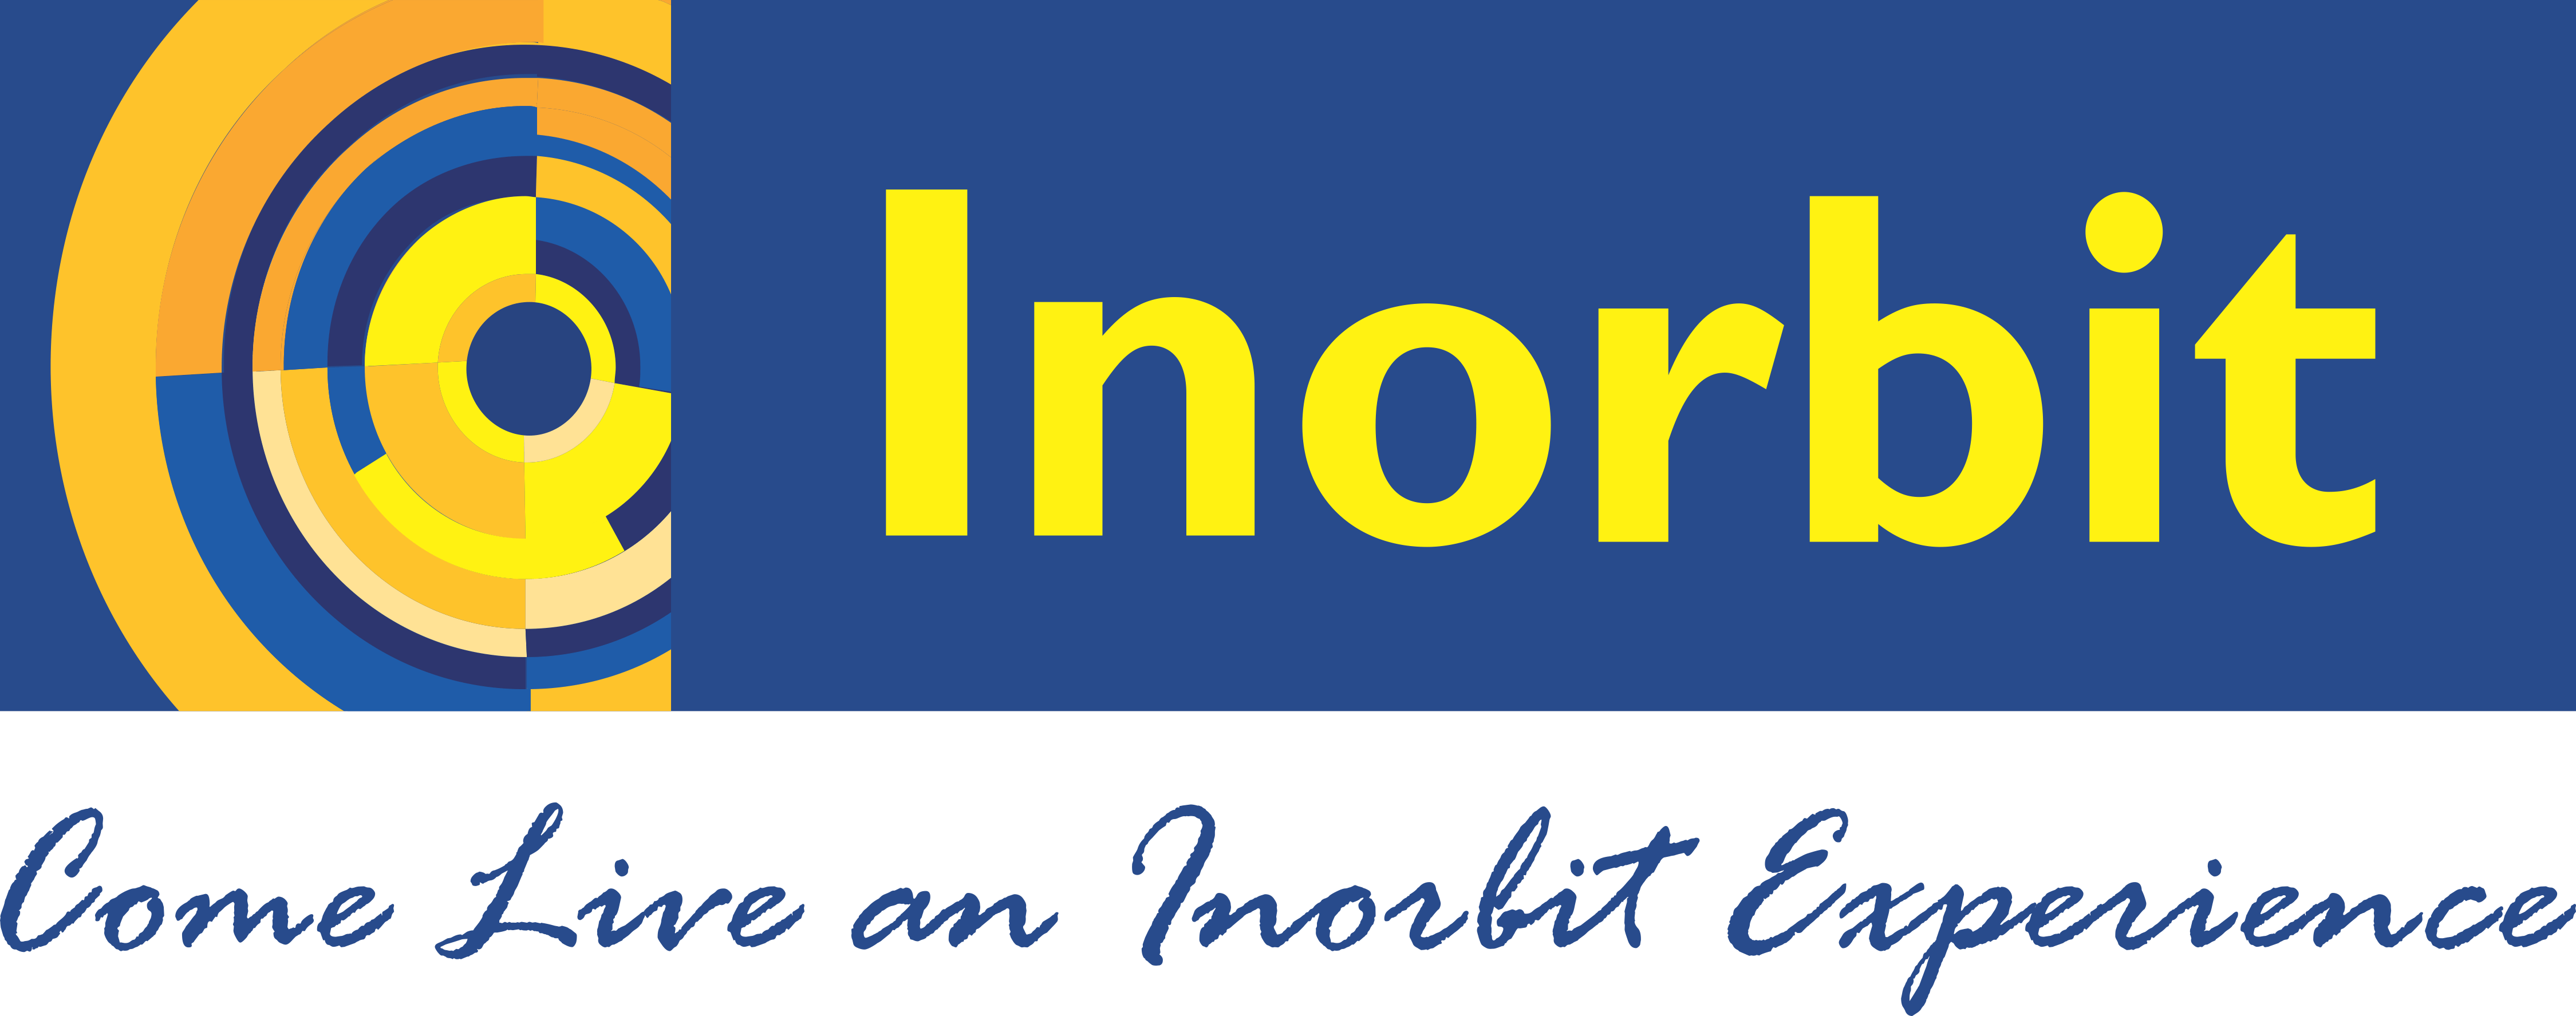 Inorbit’s Fashion Statement⁠⁠⁠⁠